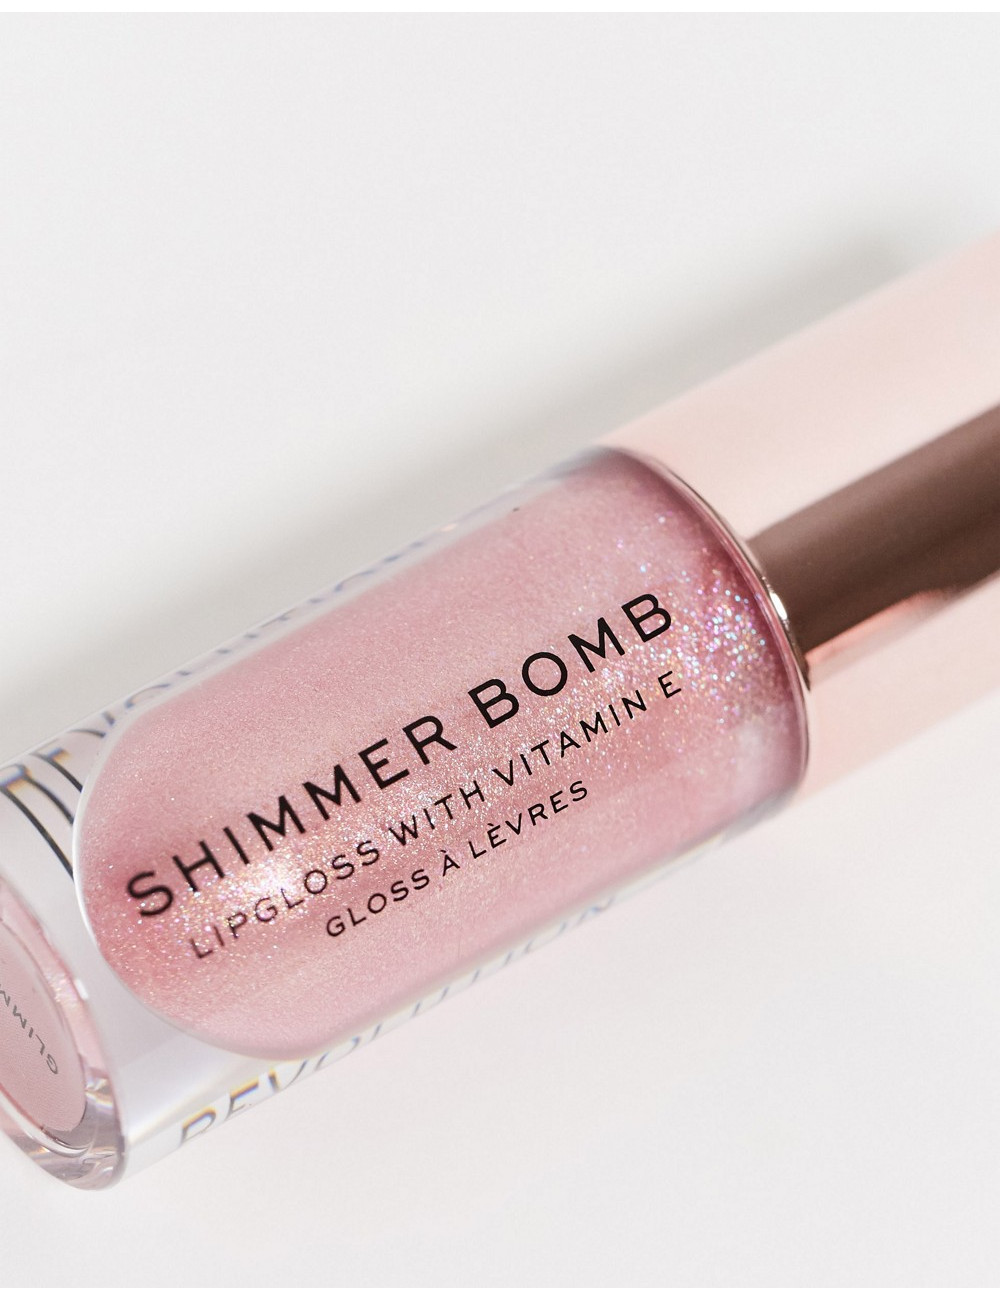 Revolution Shimmer Bomb Lip...